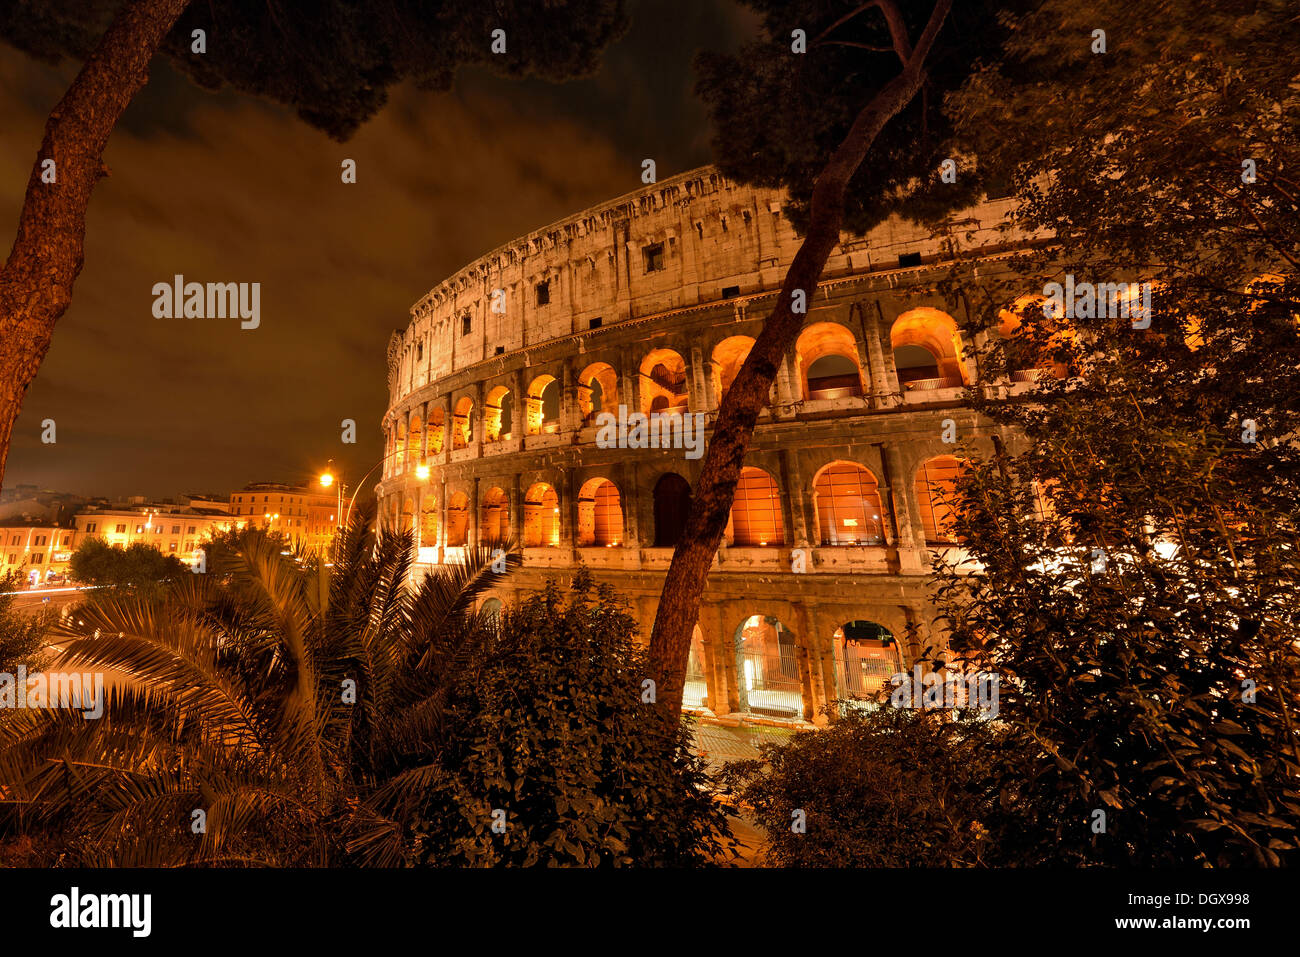 L'ancienne Rome, situé entre le Mont Palatin et le Capitole de la ville de Rome, Italie Banque D'Images